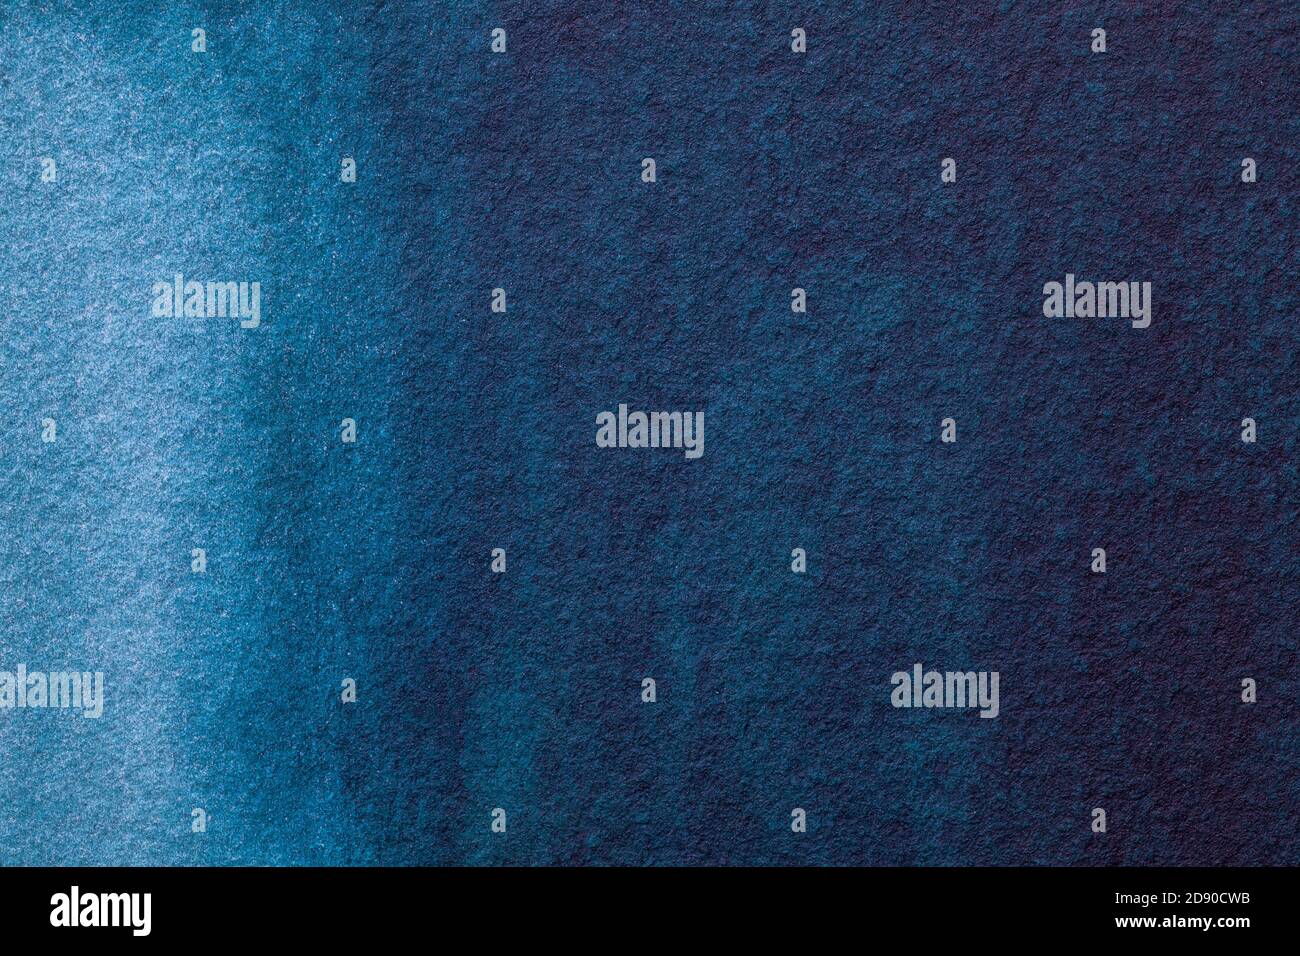 Abstrakte Kunst Hintergrund marine blaue Farben. Aquarellmalerei auf Leinwand mit weichem Denim-Farbverlauf. Fragment der Grafik auf Papier mit Muster. Textur b Stockfoto